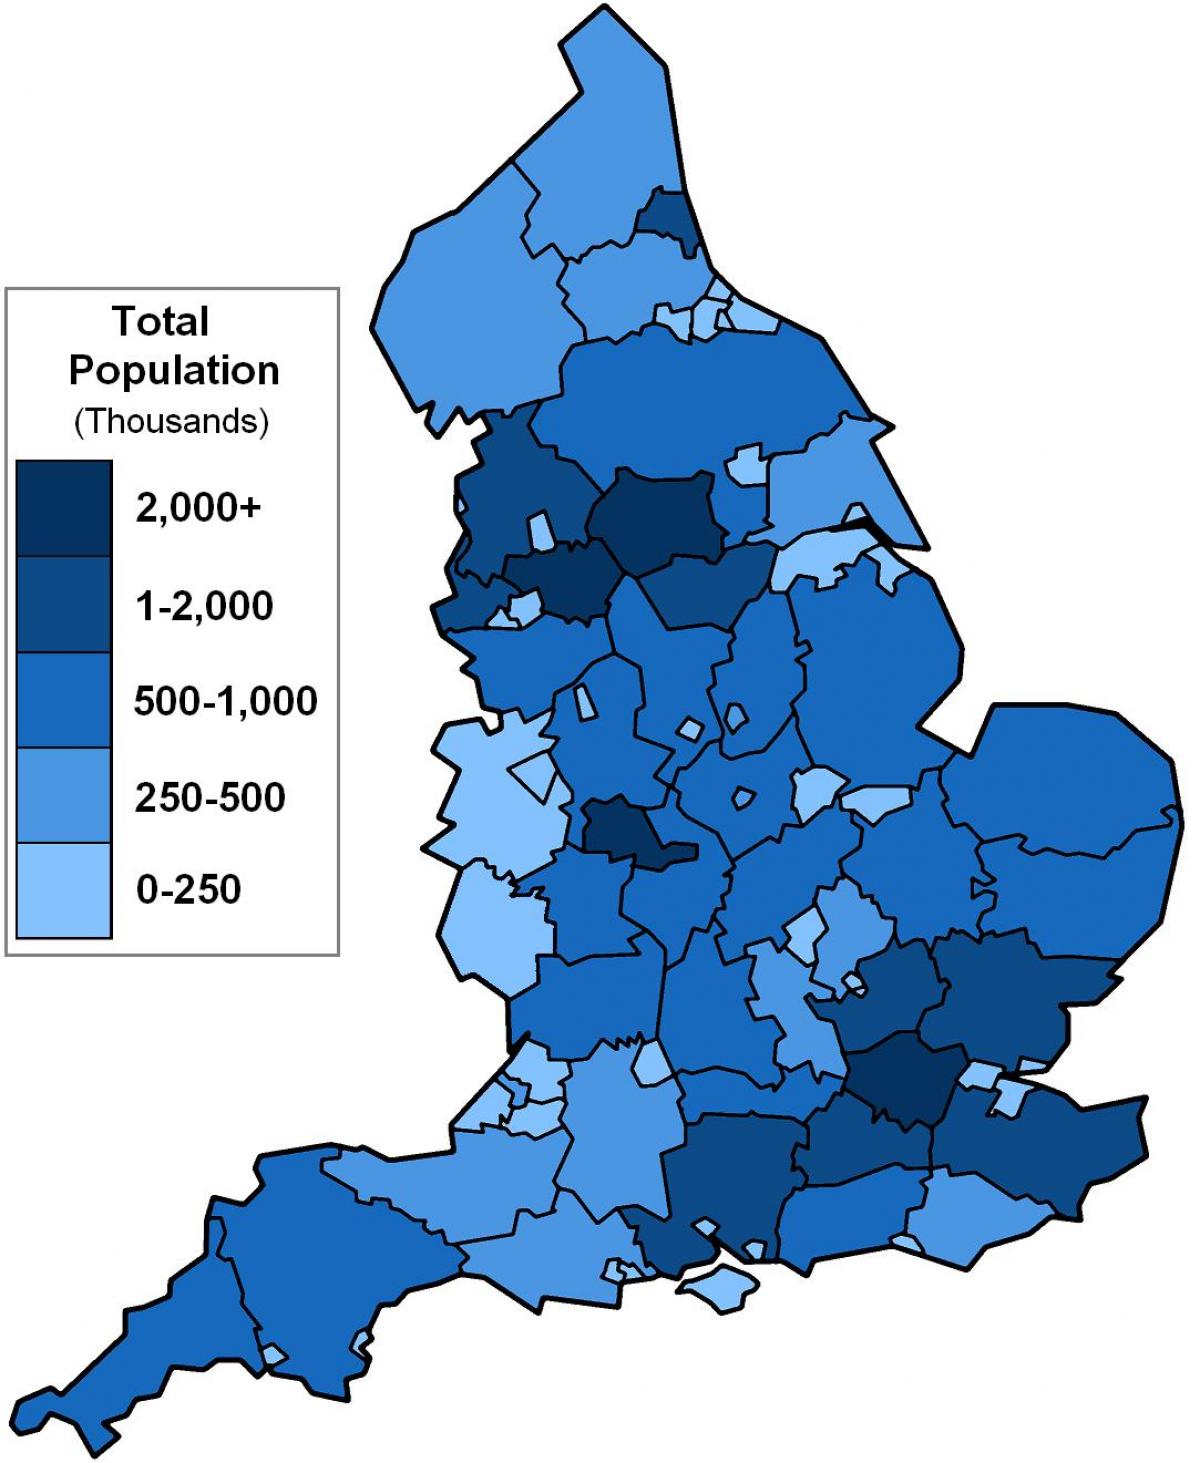 Bevölkerung in Großbritannienmap Karte der Bevölkerung in Großbritannien (Northern Europe